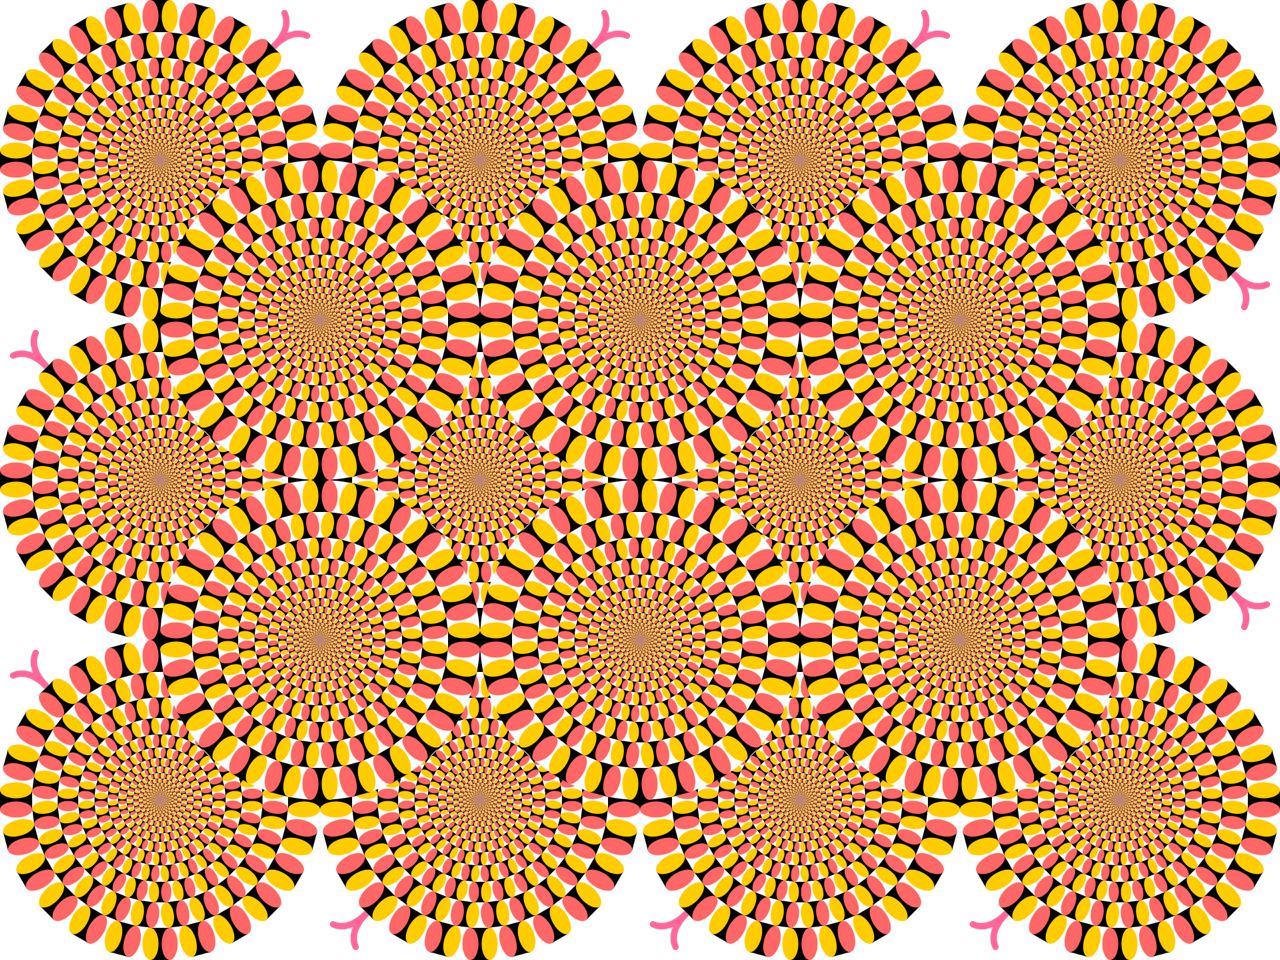 Оптическая иллюзия Акиоши Китаока